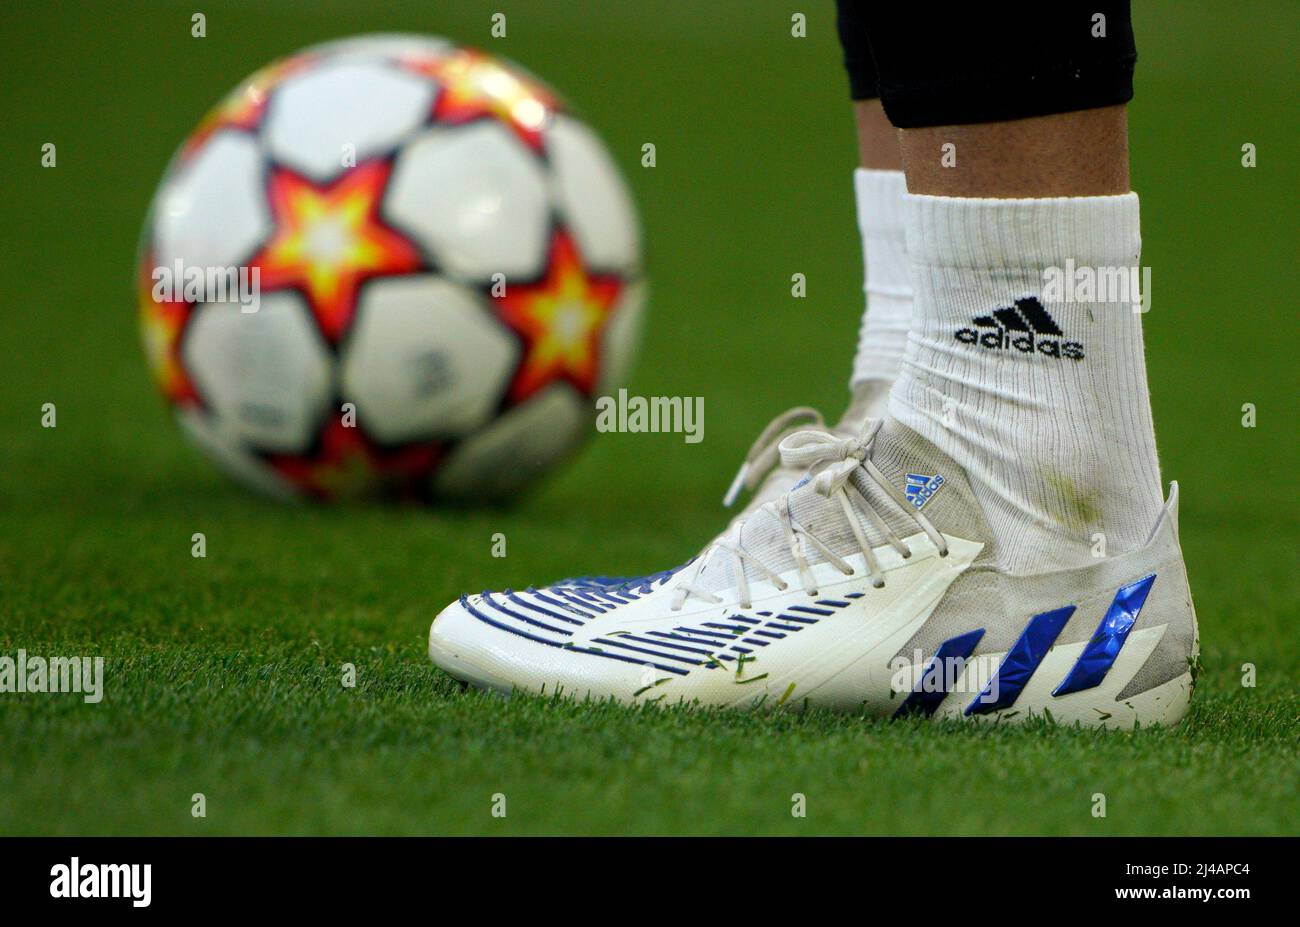 vista detallada de las botas Adidas durante la final del cuarto de la UEFA Champions League, el partido de segunda en Anfield, Liverpool. Fecha de la foto: Miércoles 13 de